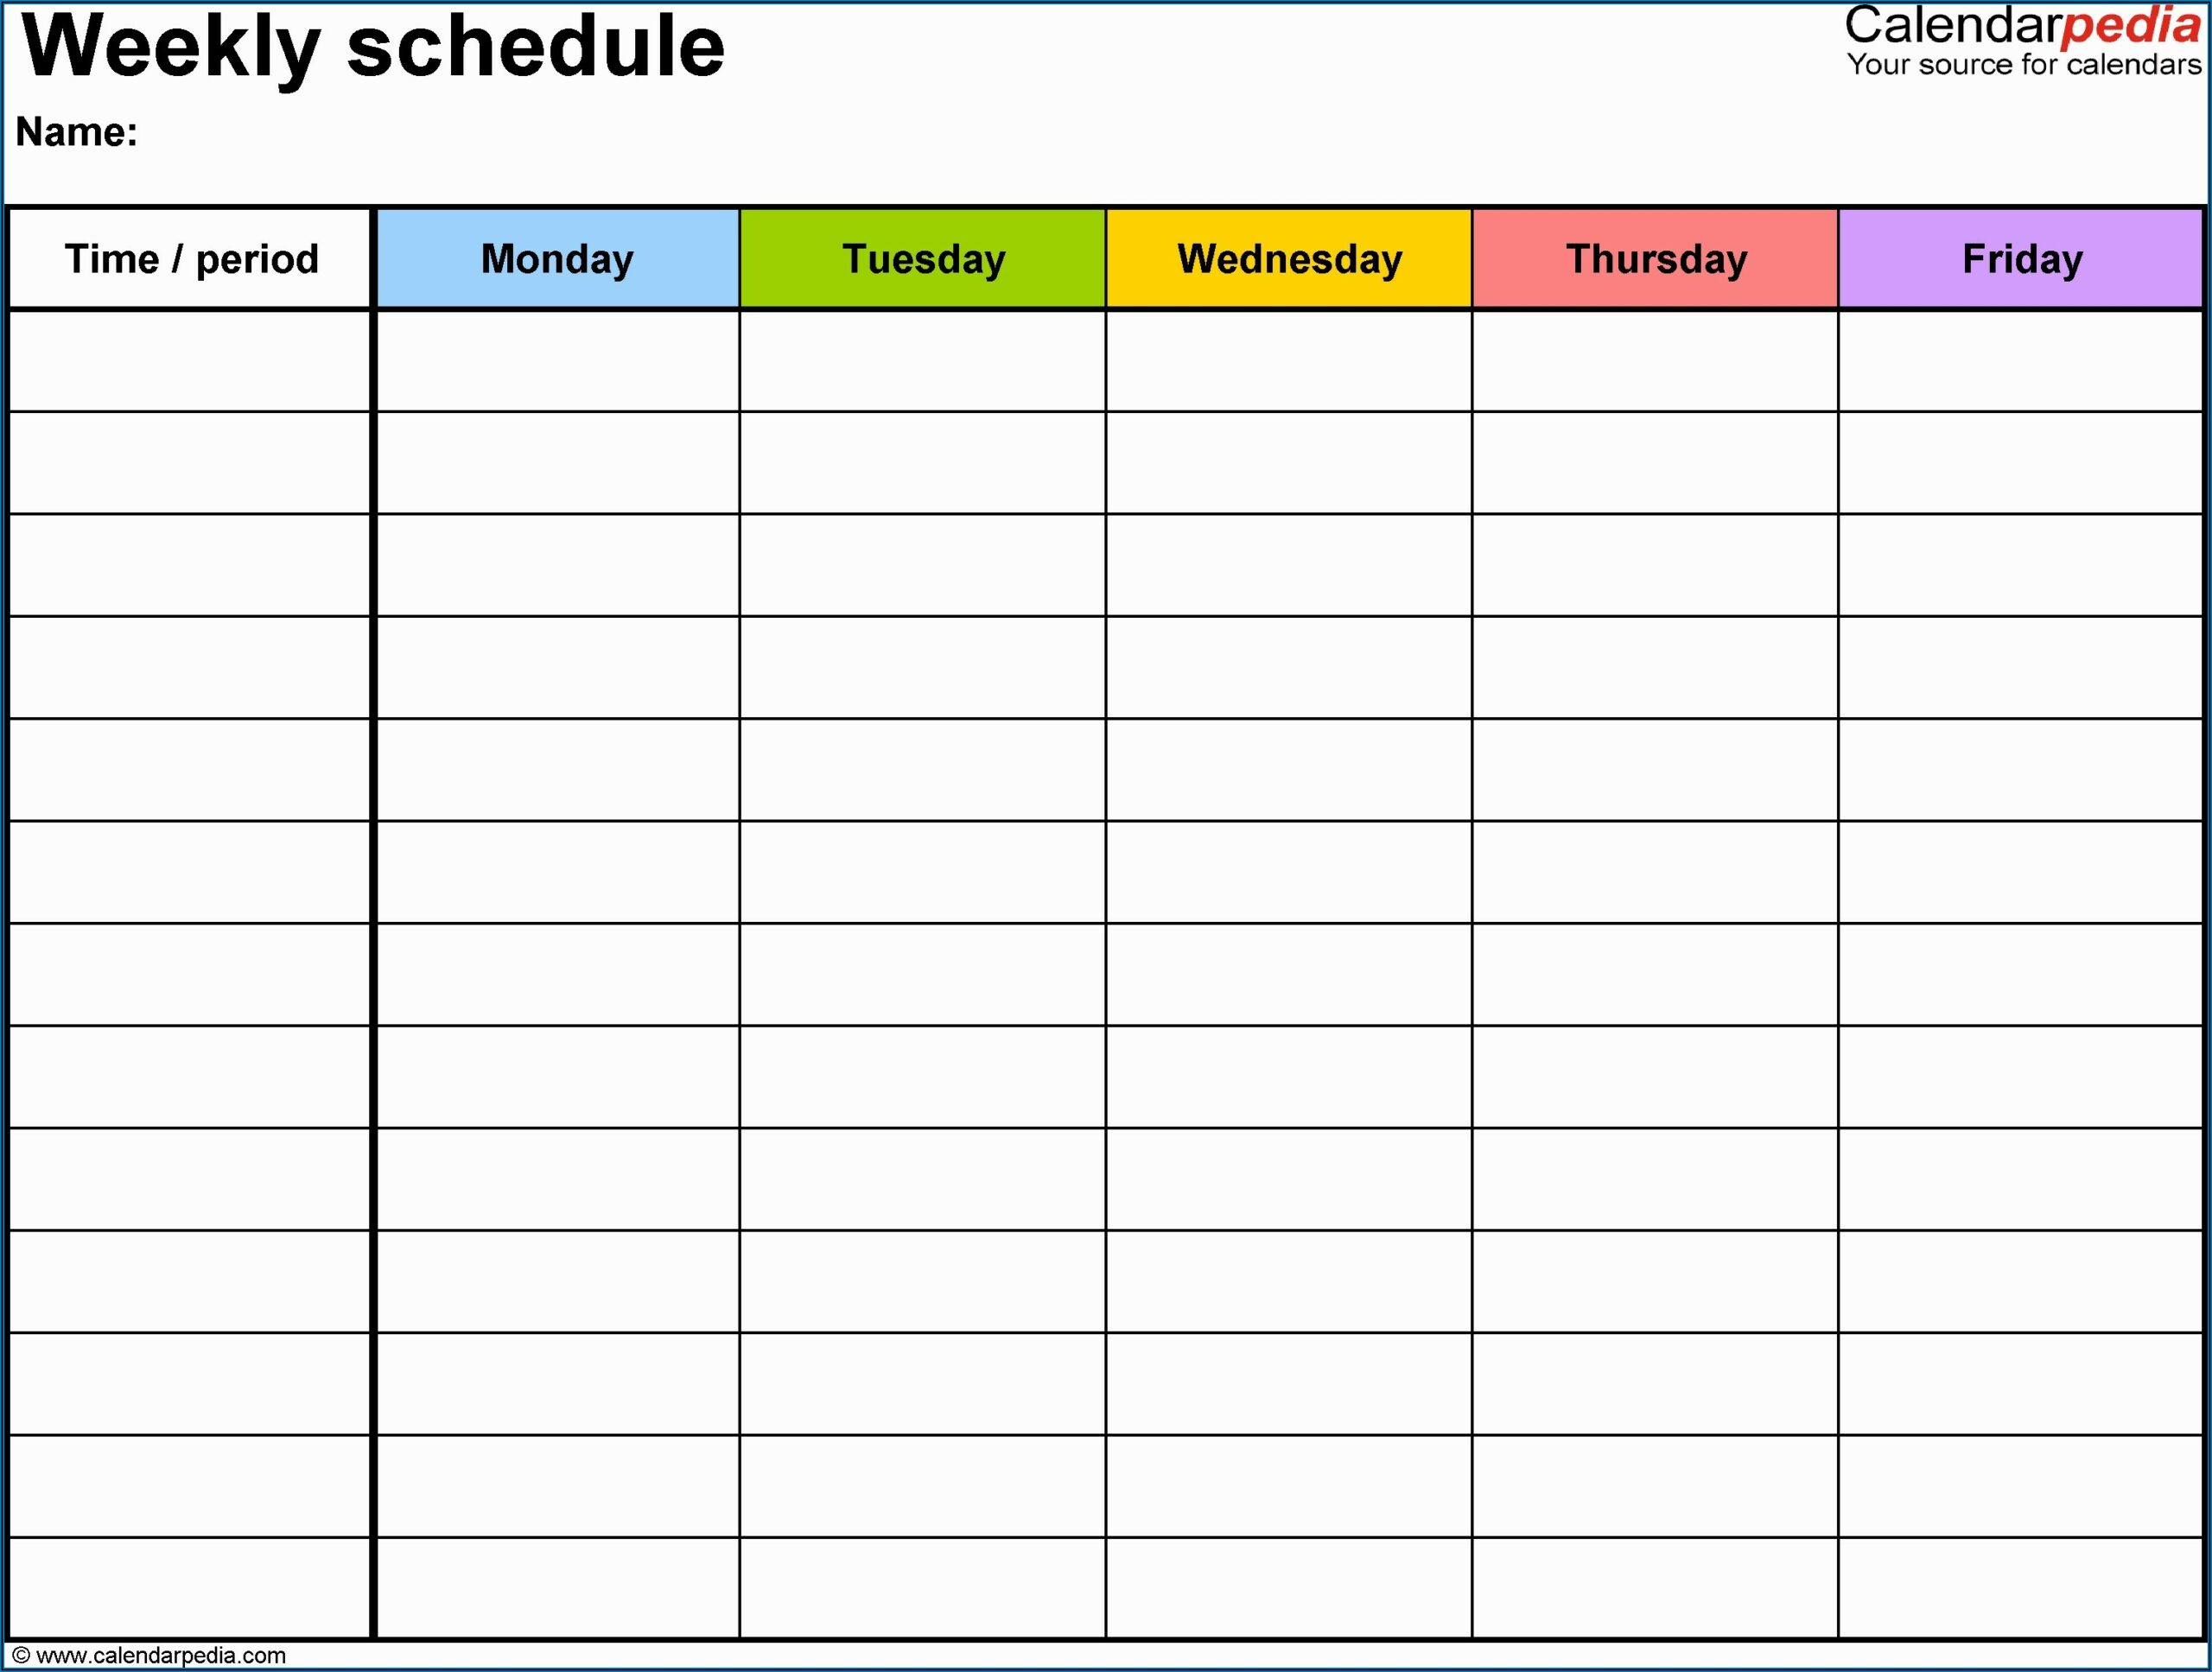 Weekly Employee Schedule Template Google Docs